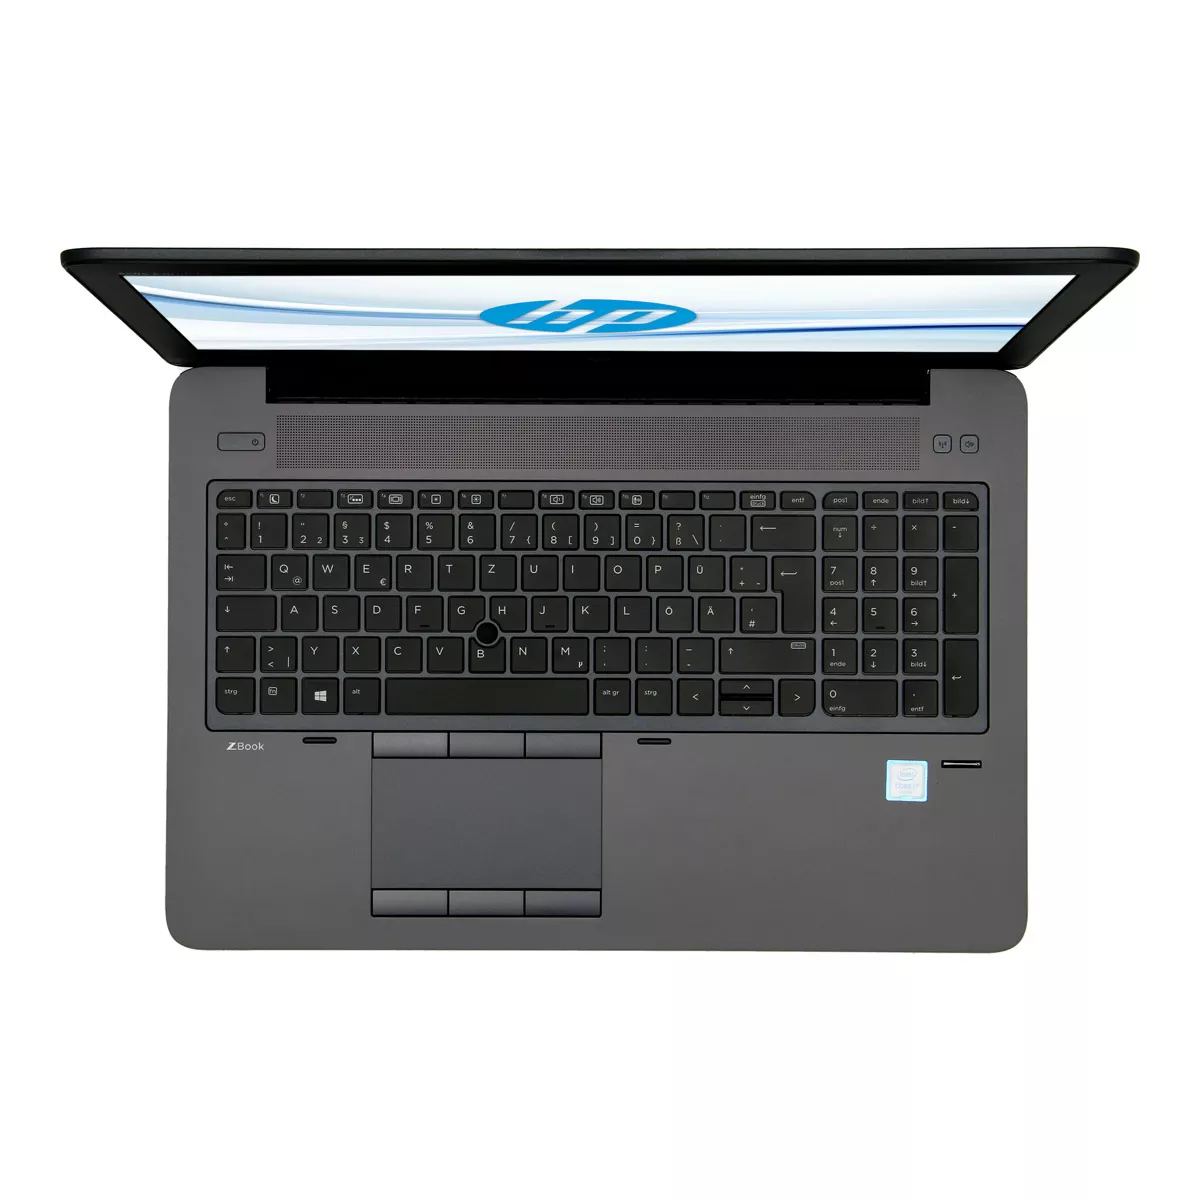 HP ZBook 15 G3 Core i7 6700HQ Full-HD nVidia Quadro M1000M 32 GB 500 GB M.2 SSD Webcam A+